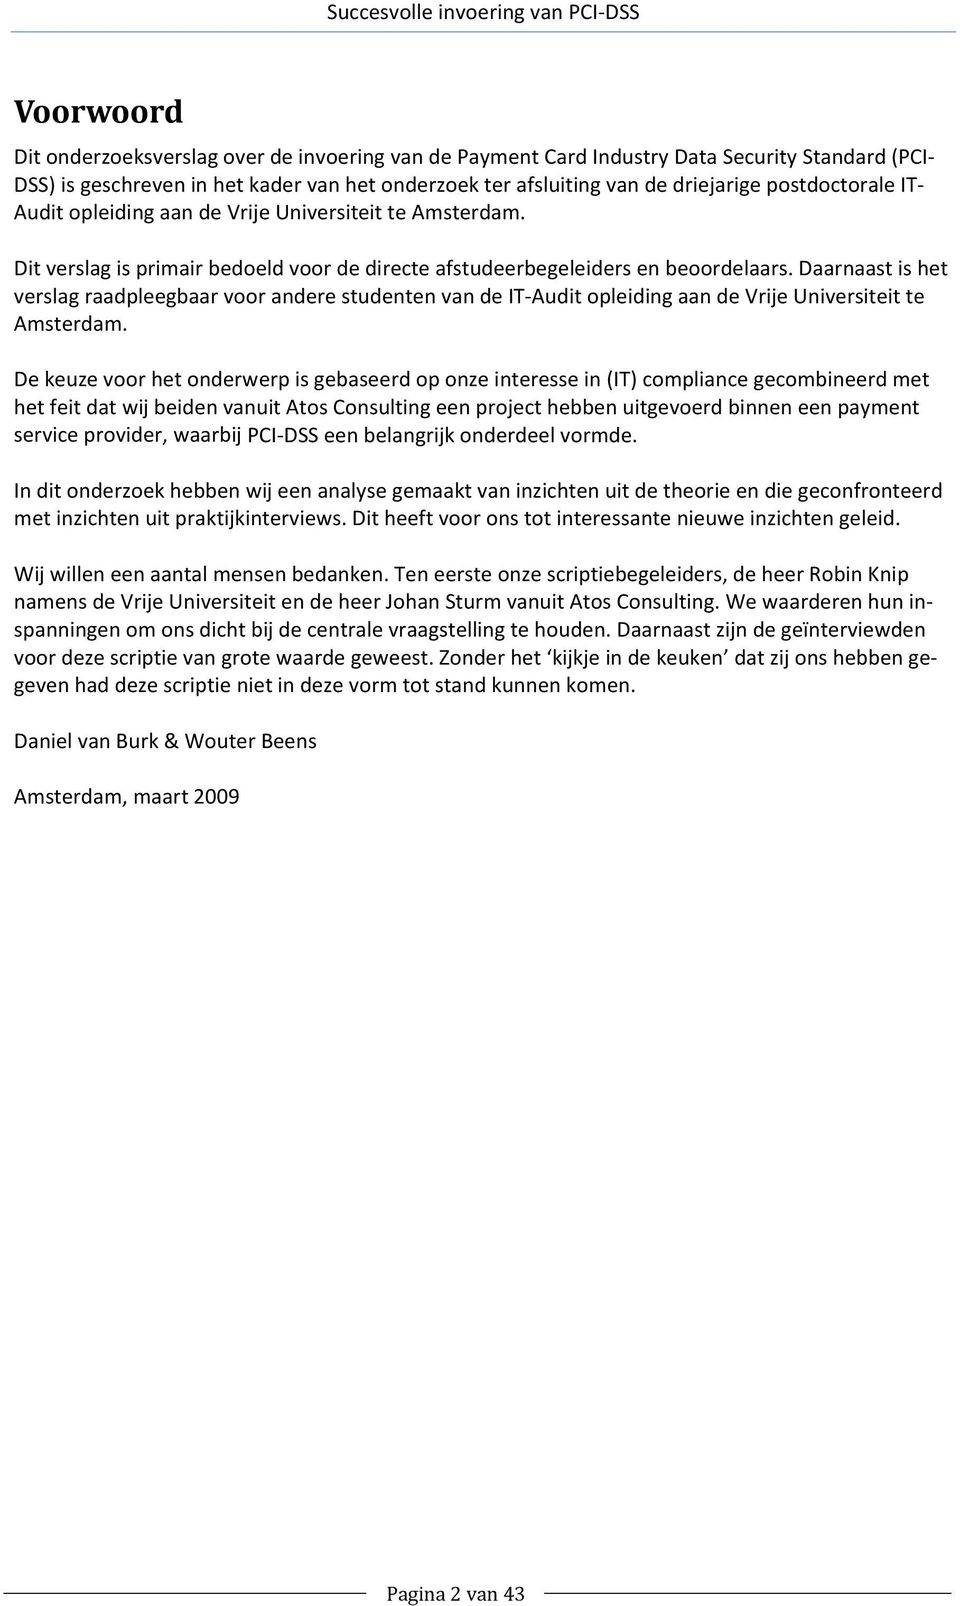 Daarnaast is het verslag raadpleegbaar voor andere studenten van de IT Audit opleiding aan de Vrije Universiteit te Amsterdam.